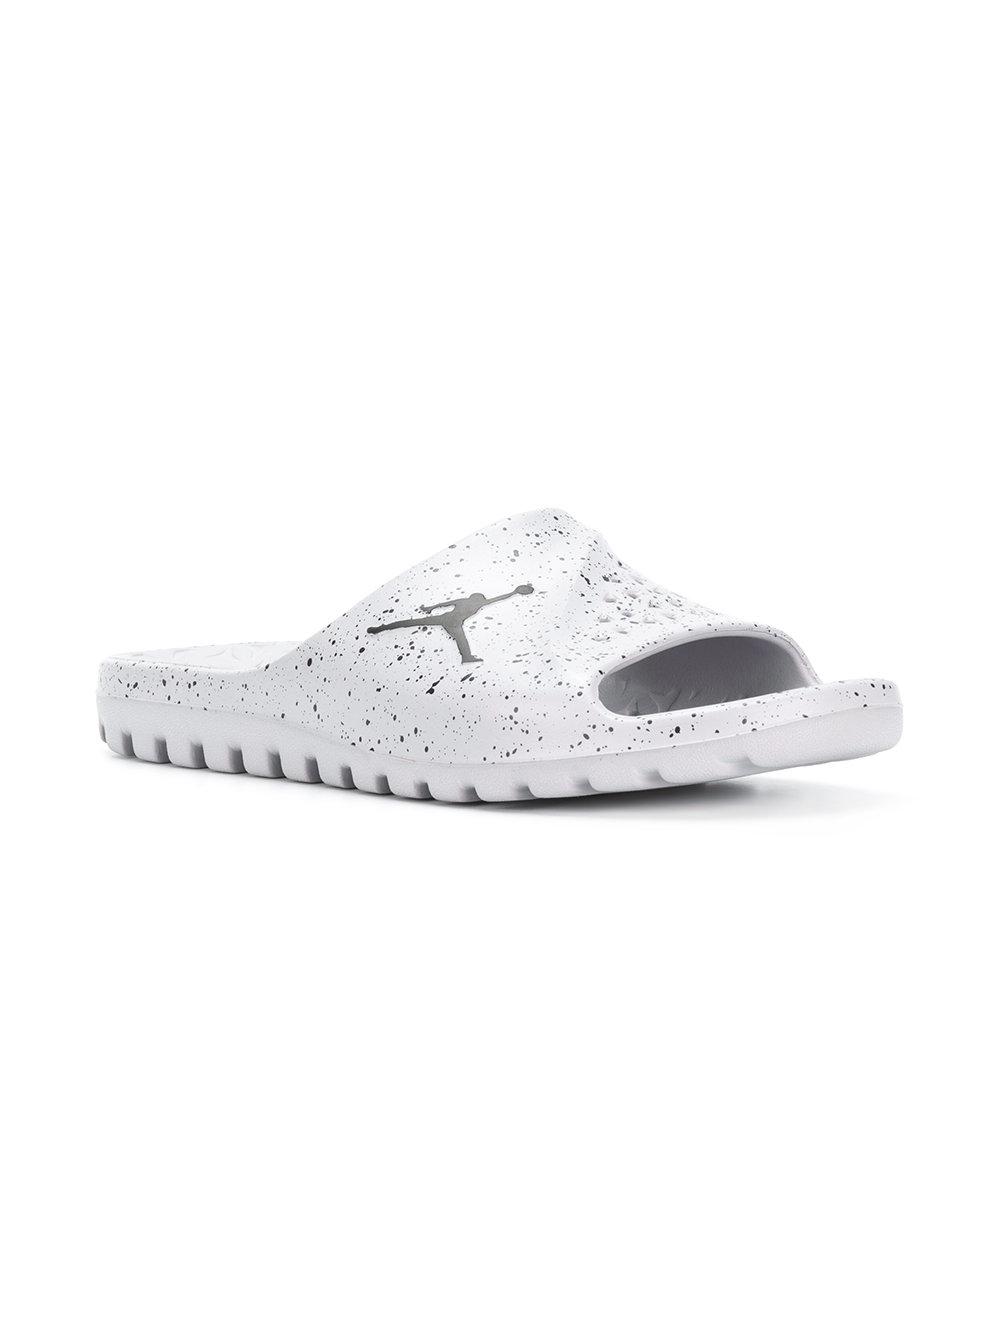 Nike Jordan Superfly Slides in Grey (Gray) for Men - Lyst